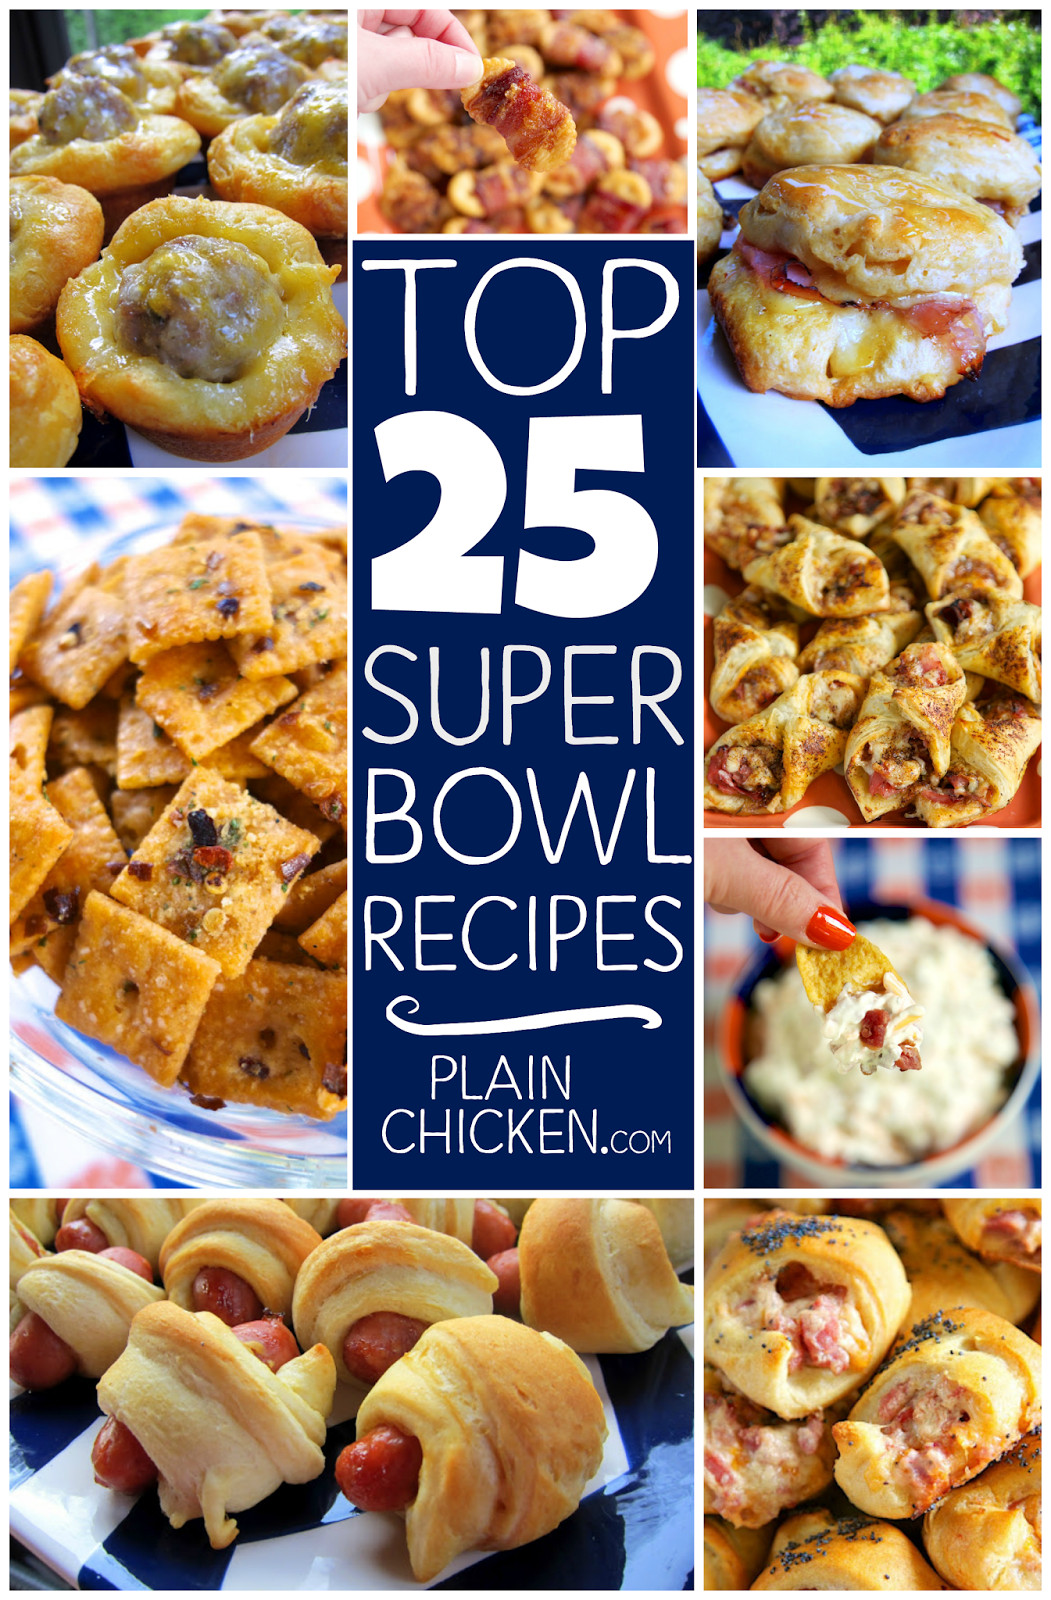 Great Super Bowl Recipes
 Top 25 Super Bowl Recipes